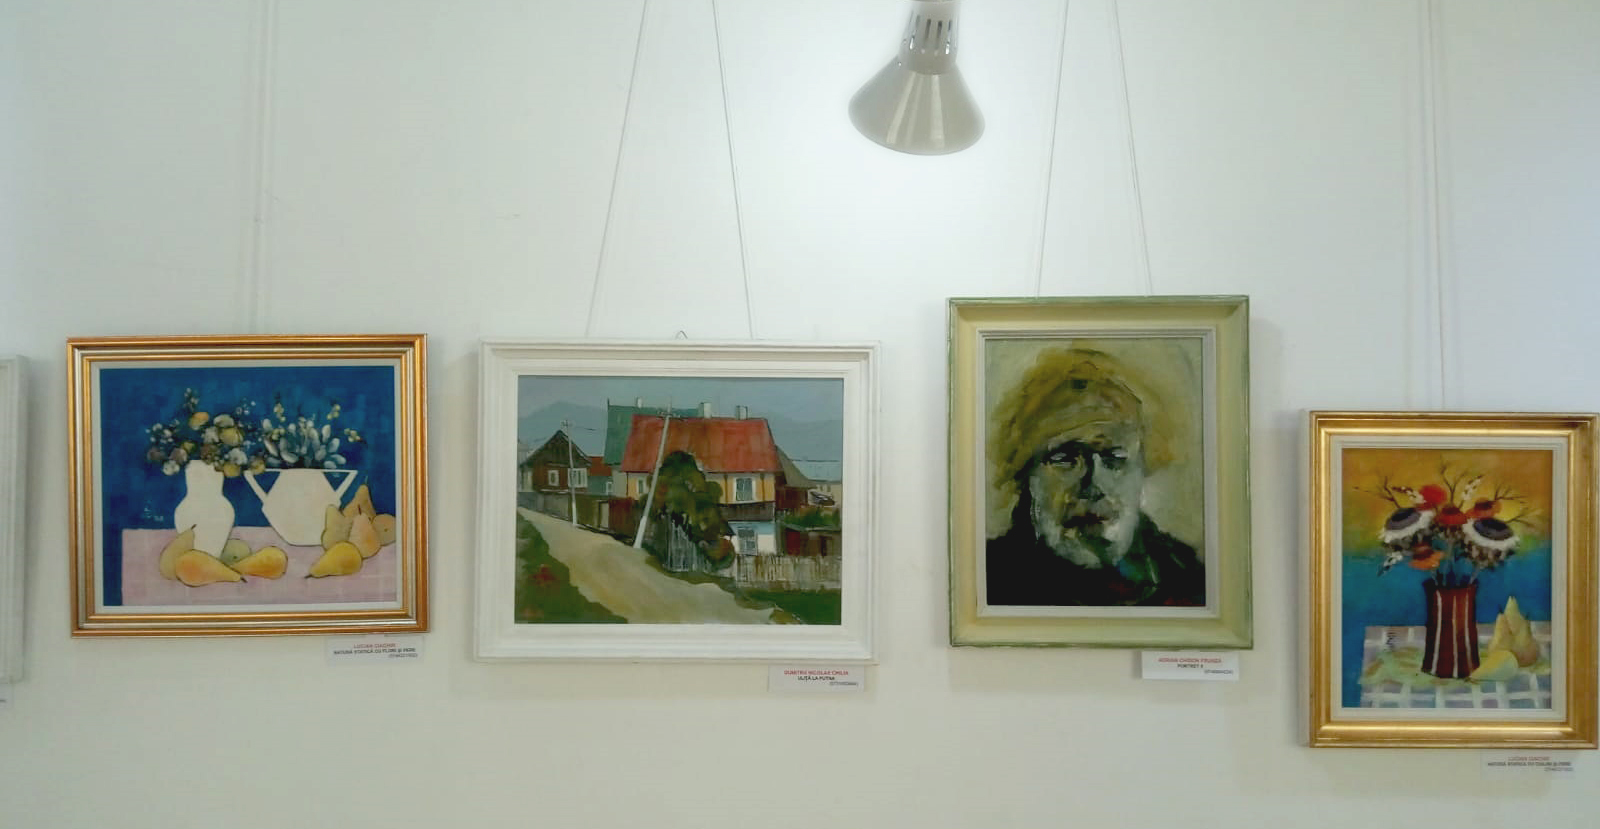  „Lumini şi umbre” - expoziţie colectivă AAPB -  (15 iunie - 10 august  2020) - Galeria de Artă -  Rădăuţi - Suceava  (9)